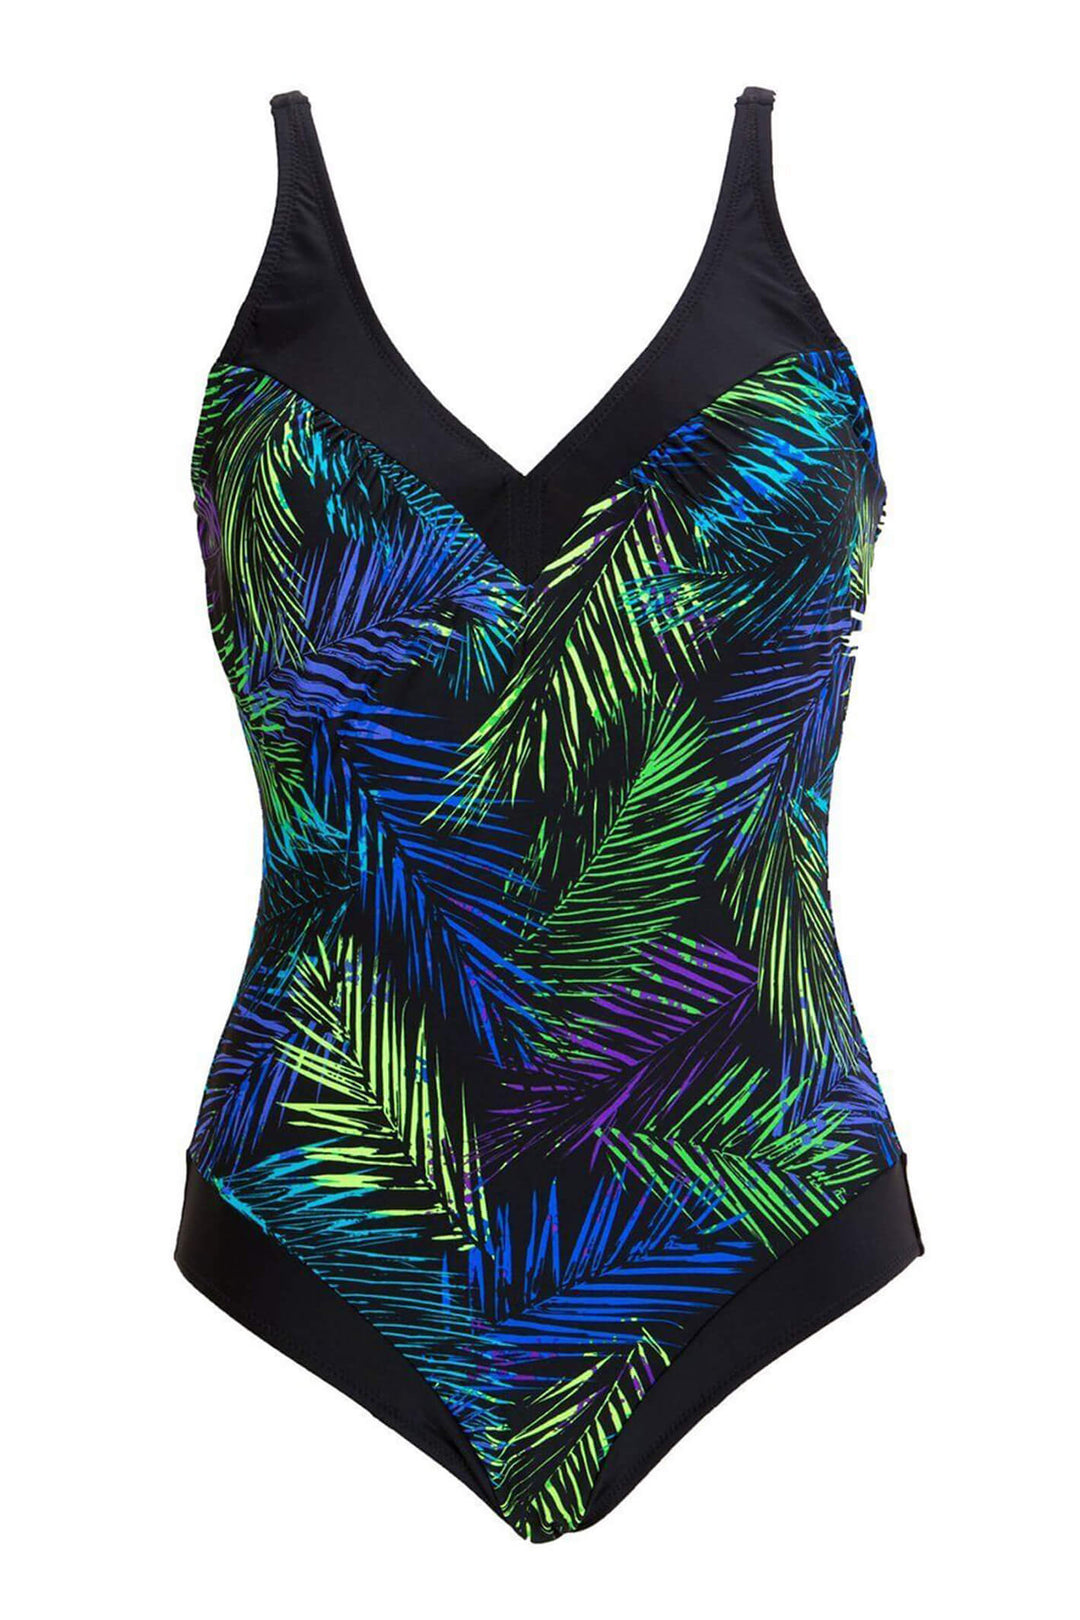 Pour Moi PM-1486 Black Blue Fern Control Swimsuit - Shirley Allum Boutique